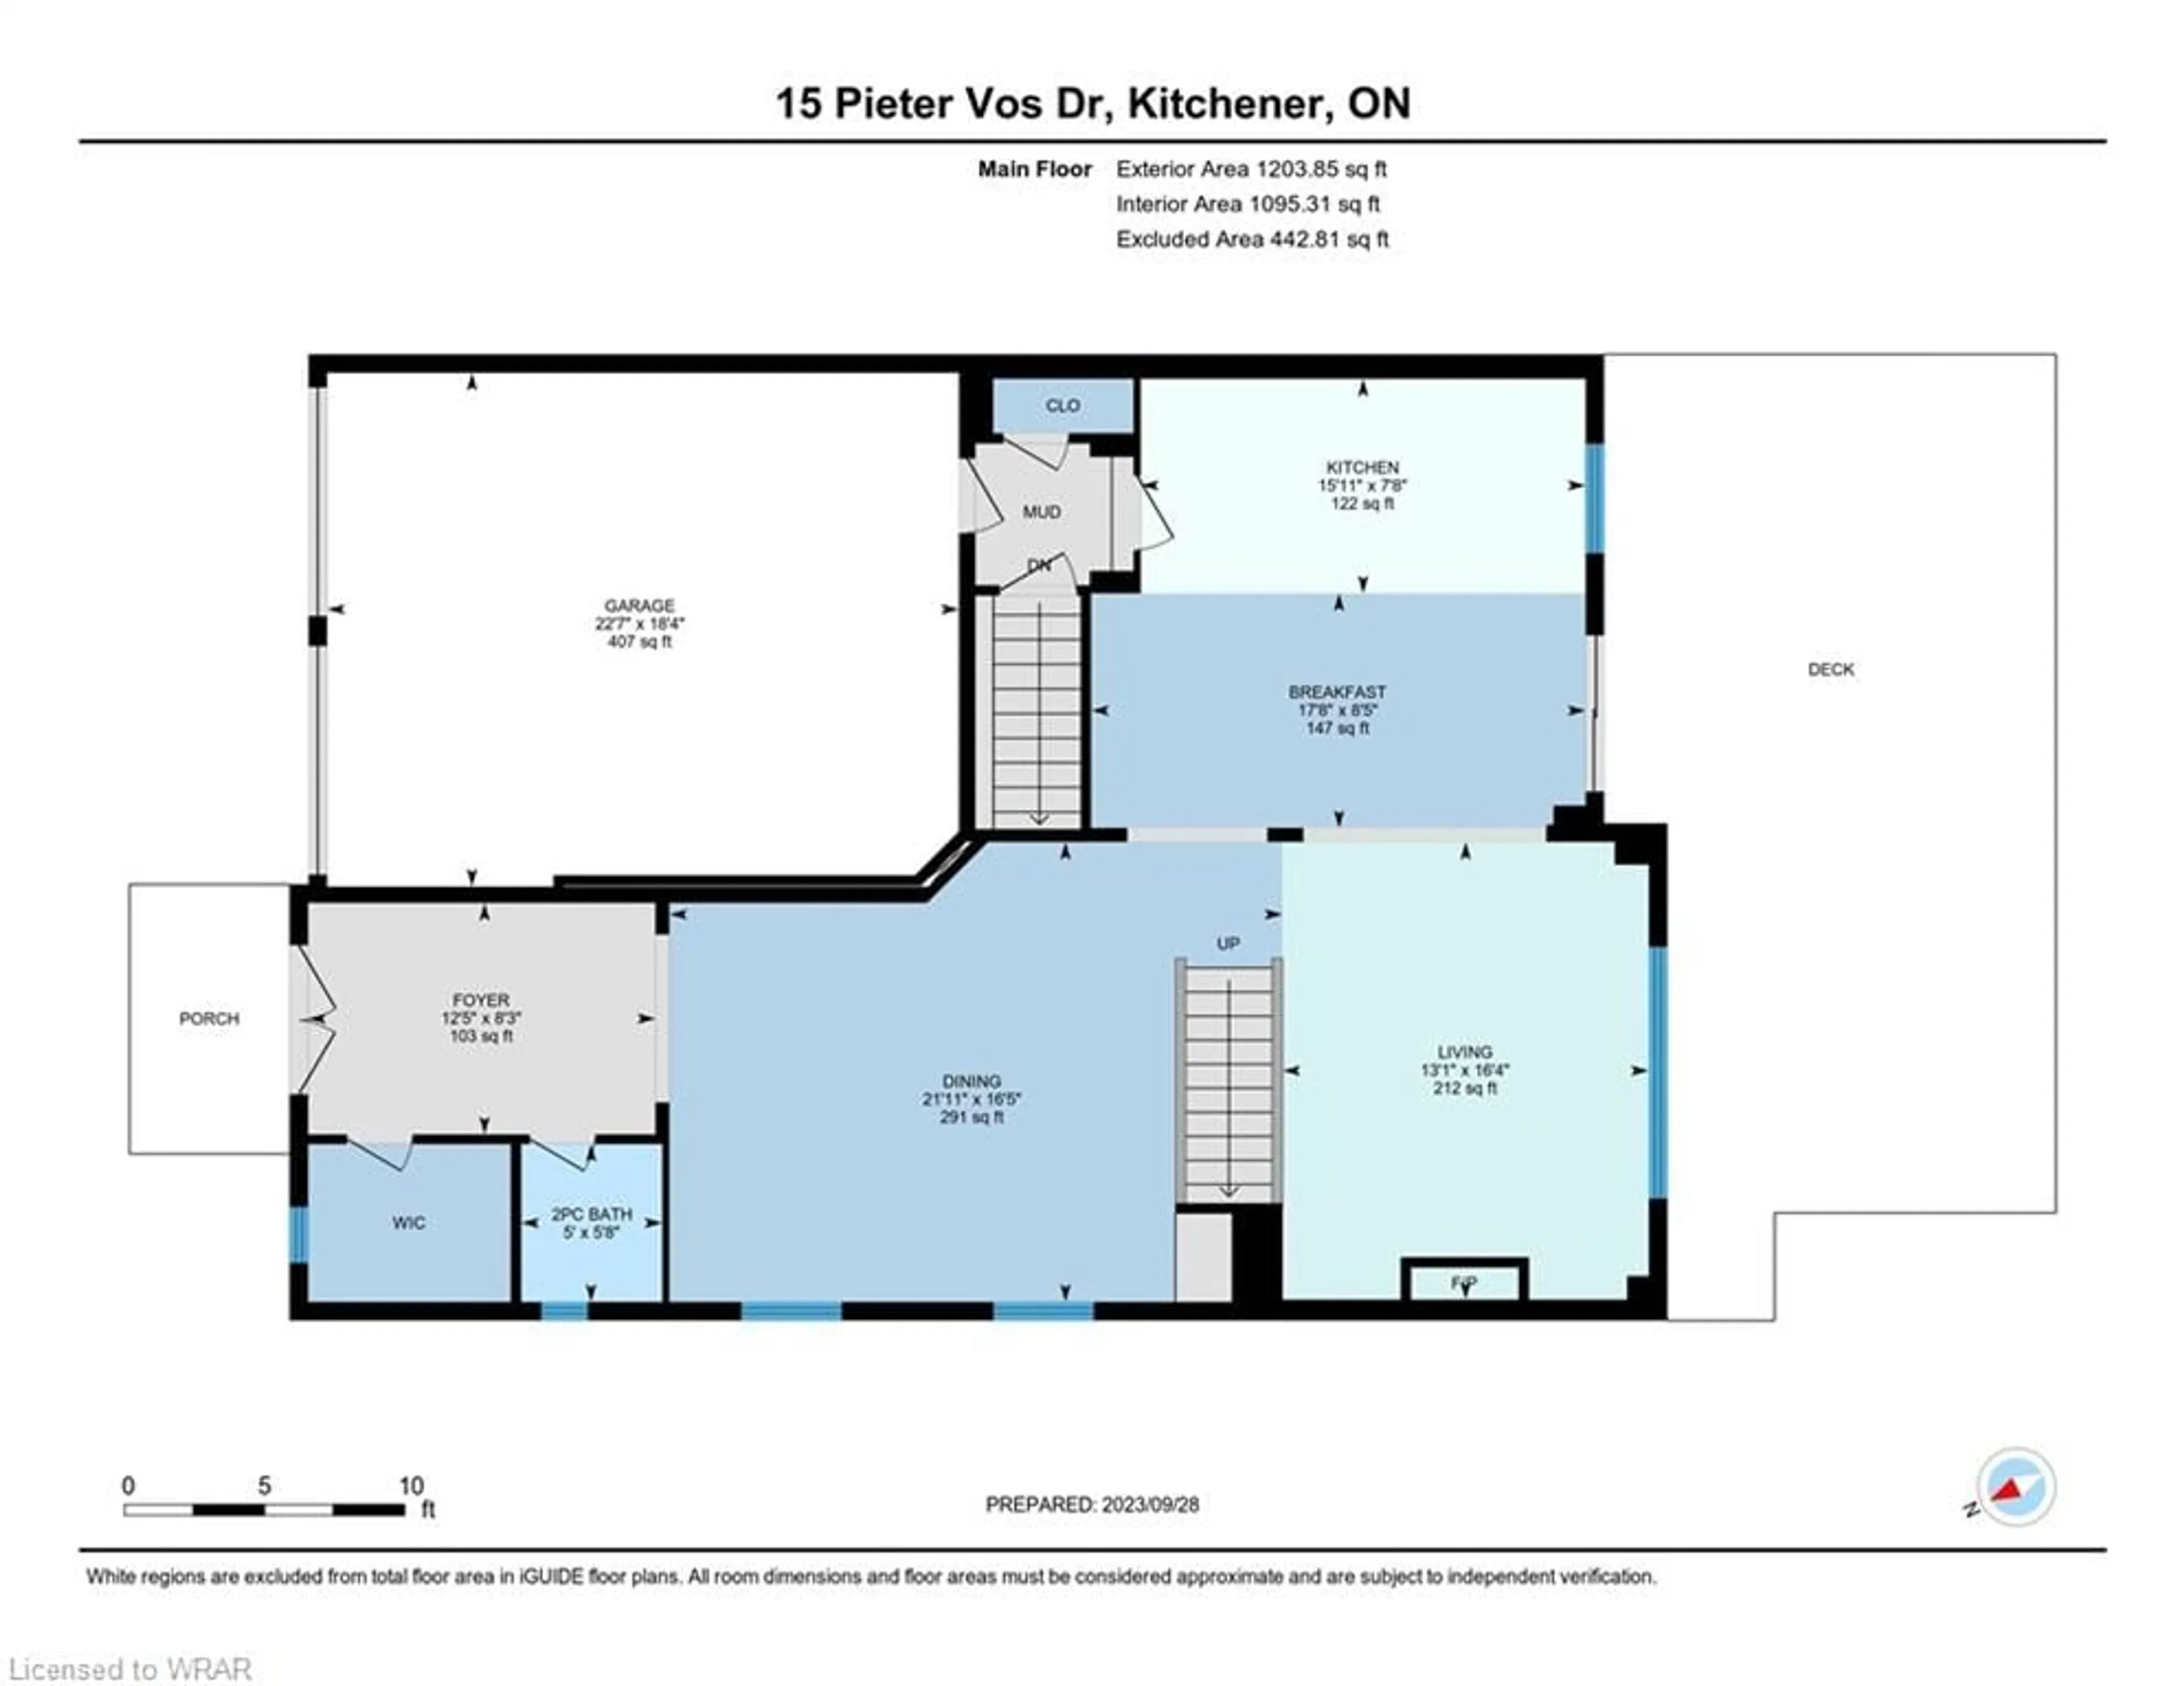 Floor plan for 15 Pieter Vos Dr, Kitchener Ontario N2P 0G1